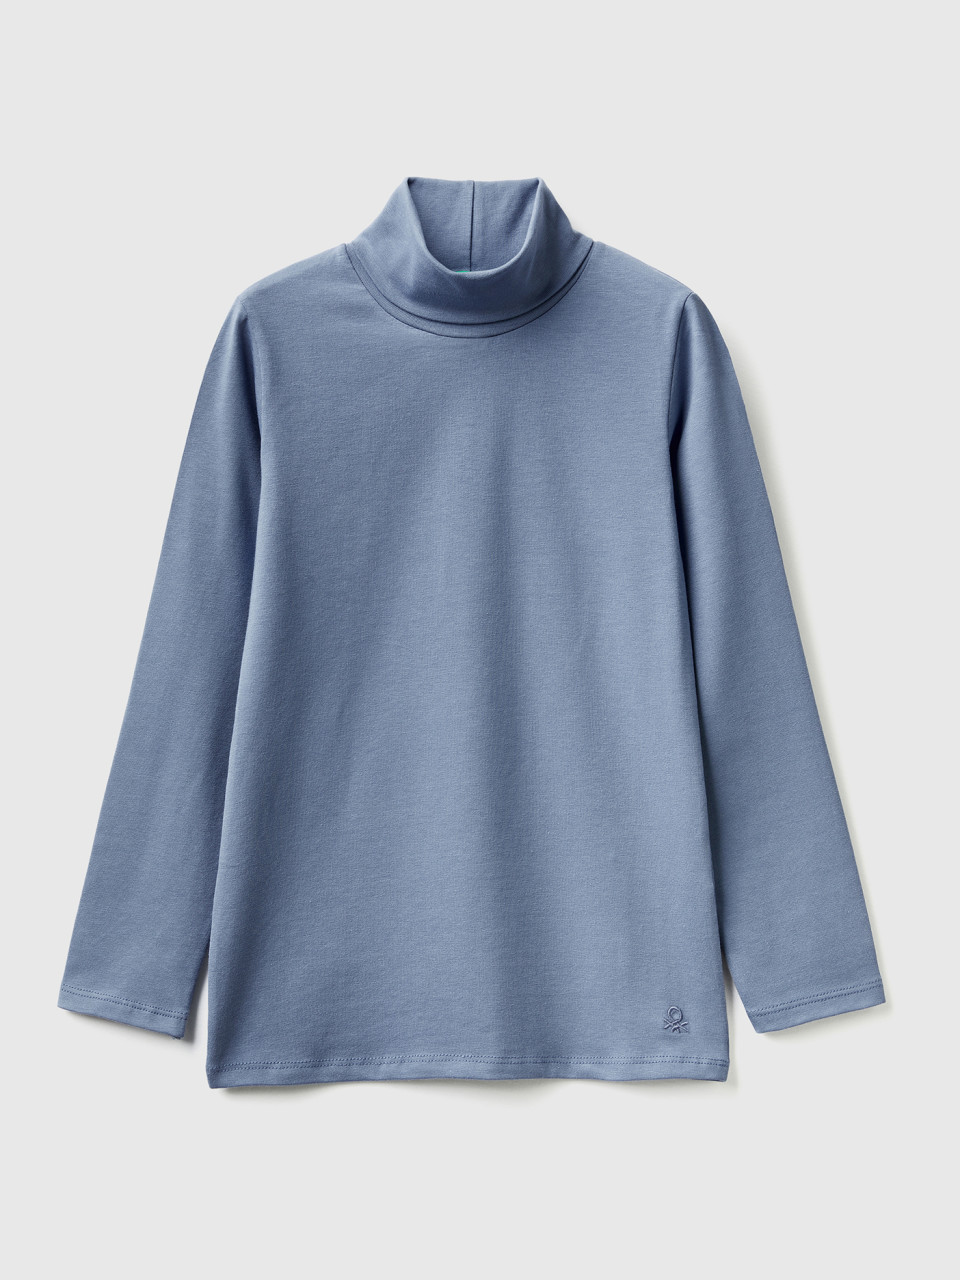 Benetton, Stretch T-shirt With High Neck, Light Blue, Kids